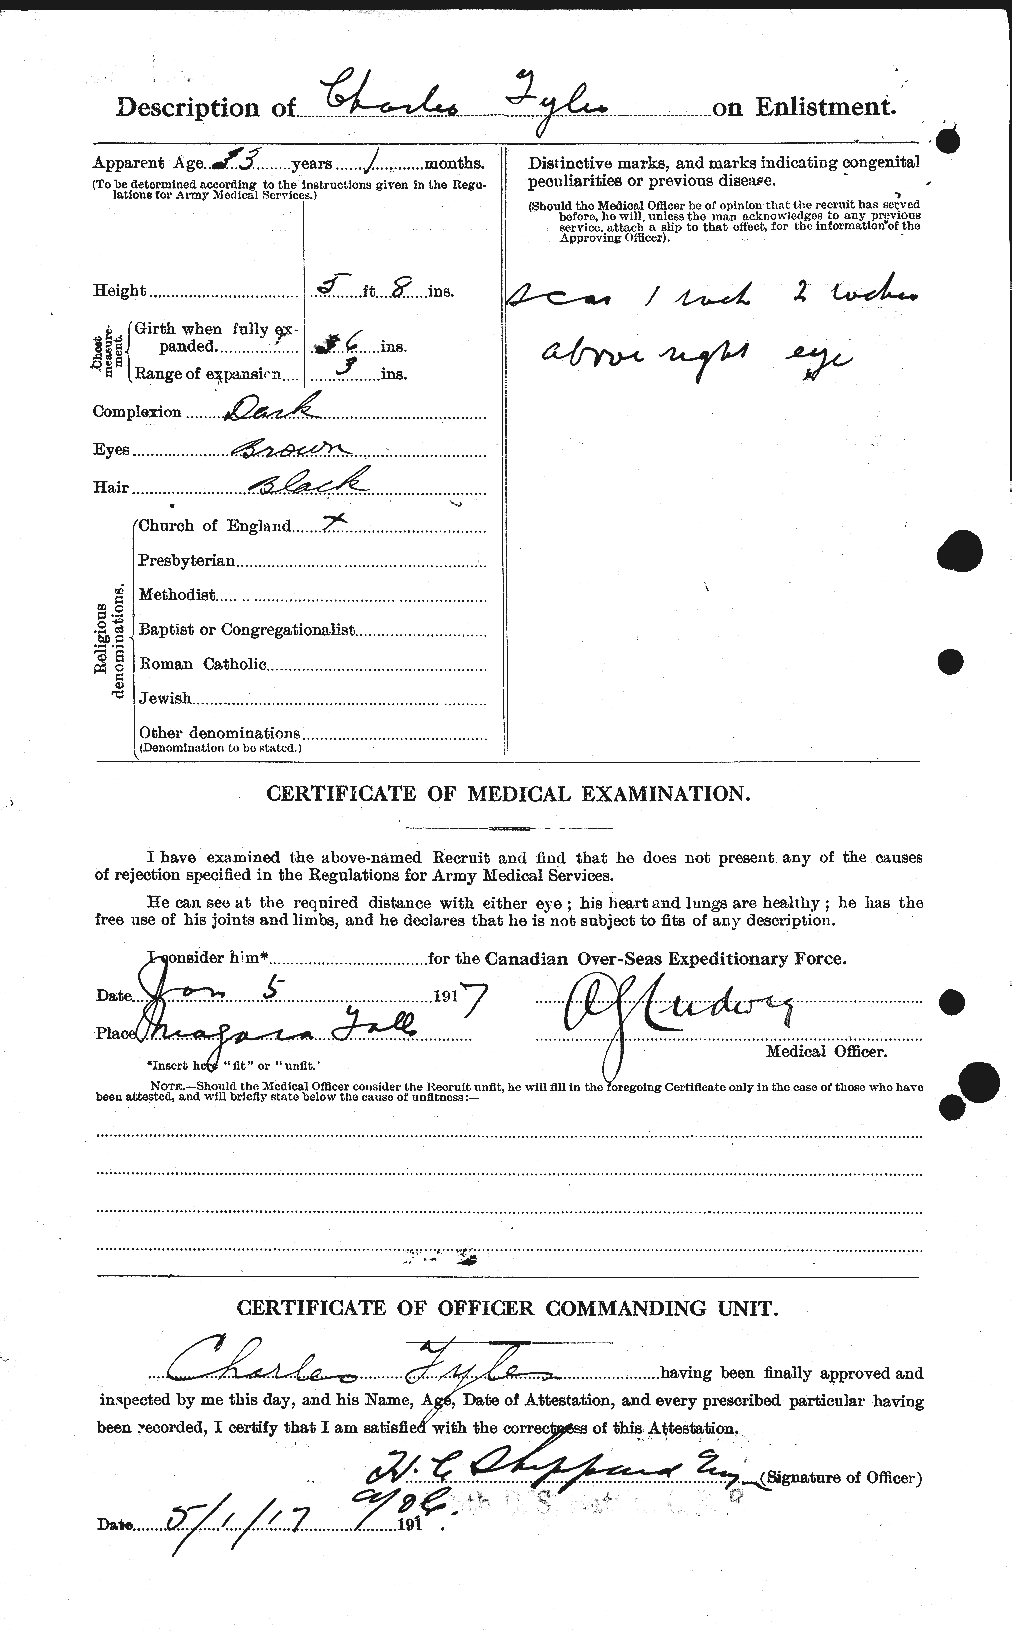 Dossiers du Personnel de la Première Guerre mondiale - CEC 338873b